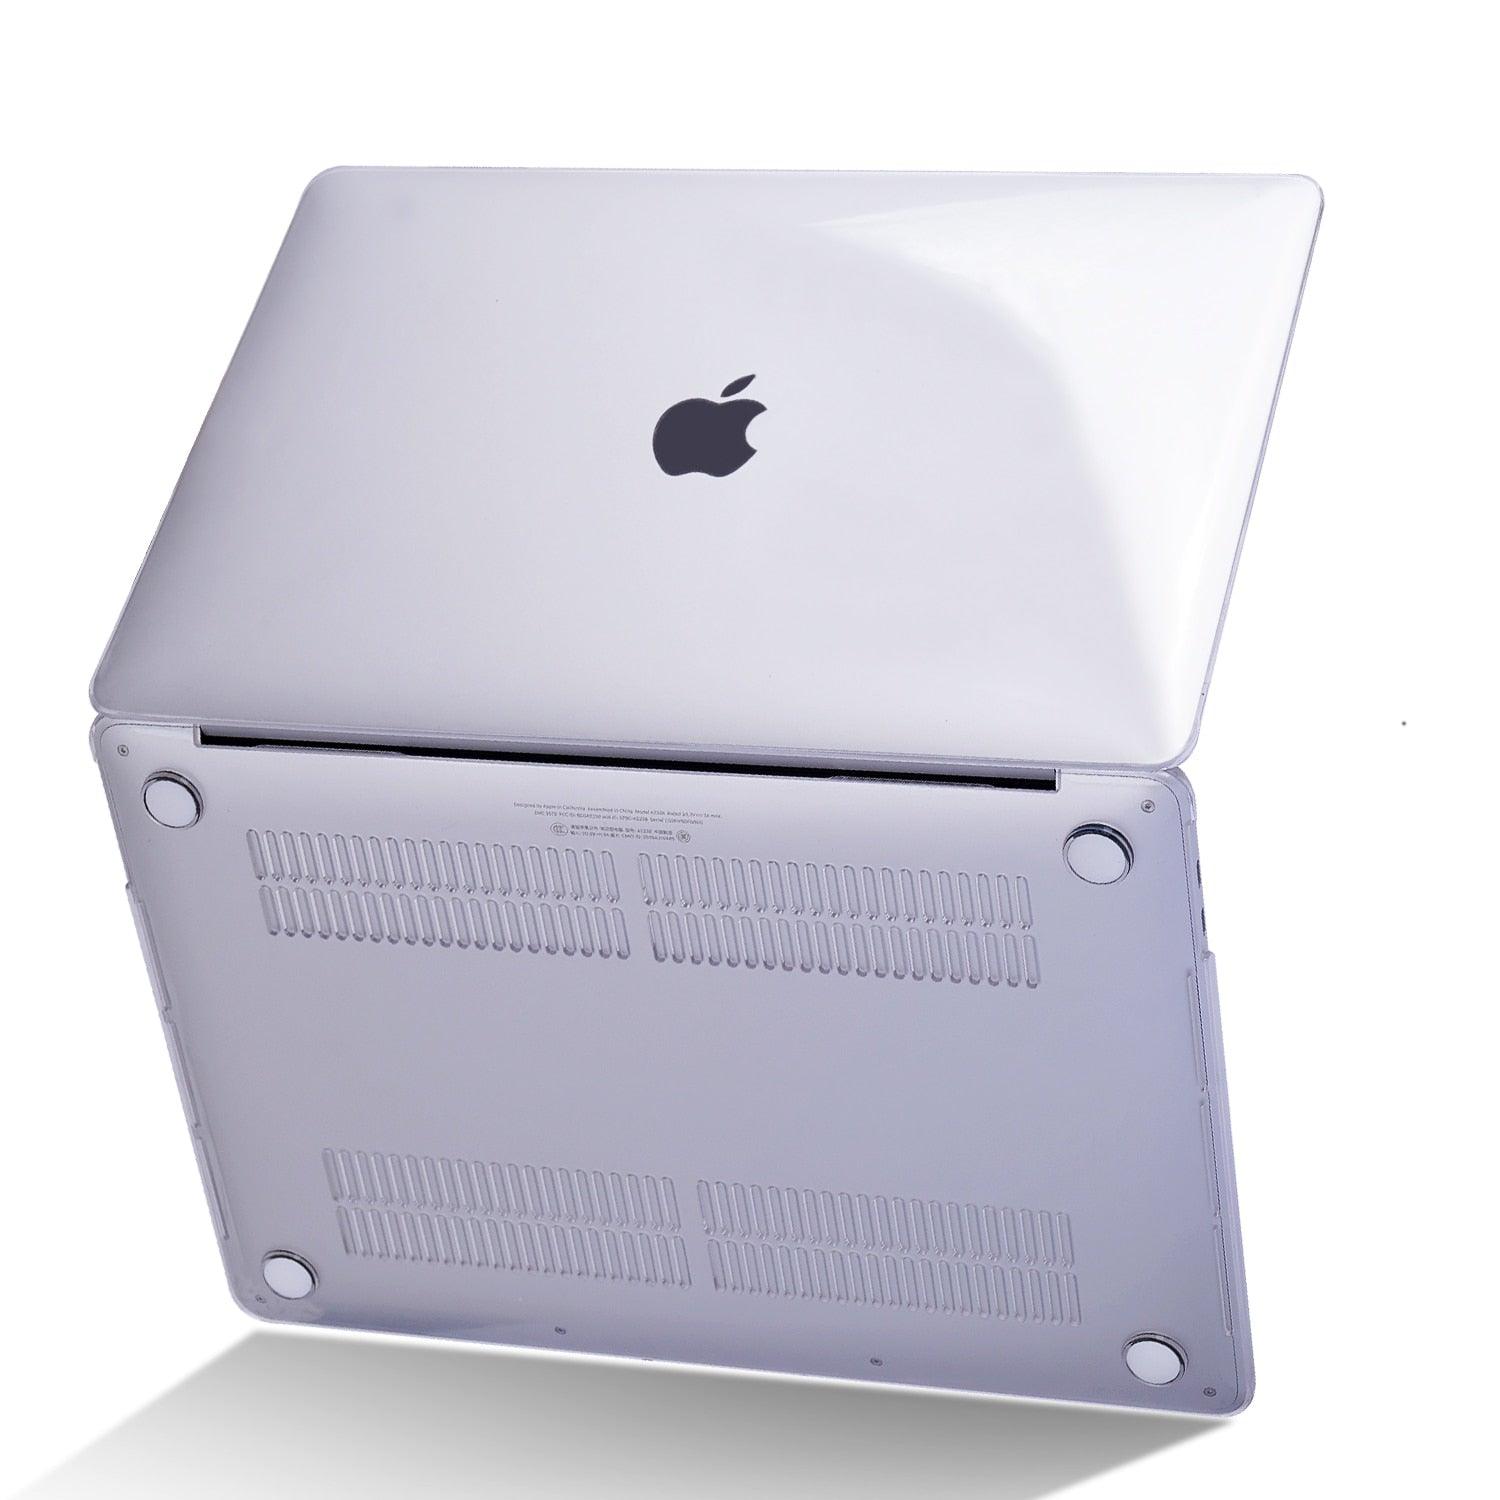 Apple Macbook Air 13 Cases, Laptop Cases